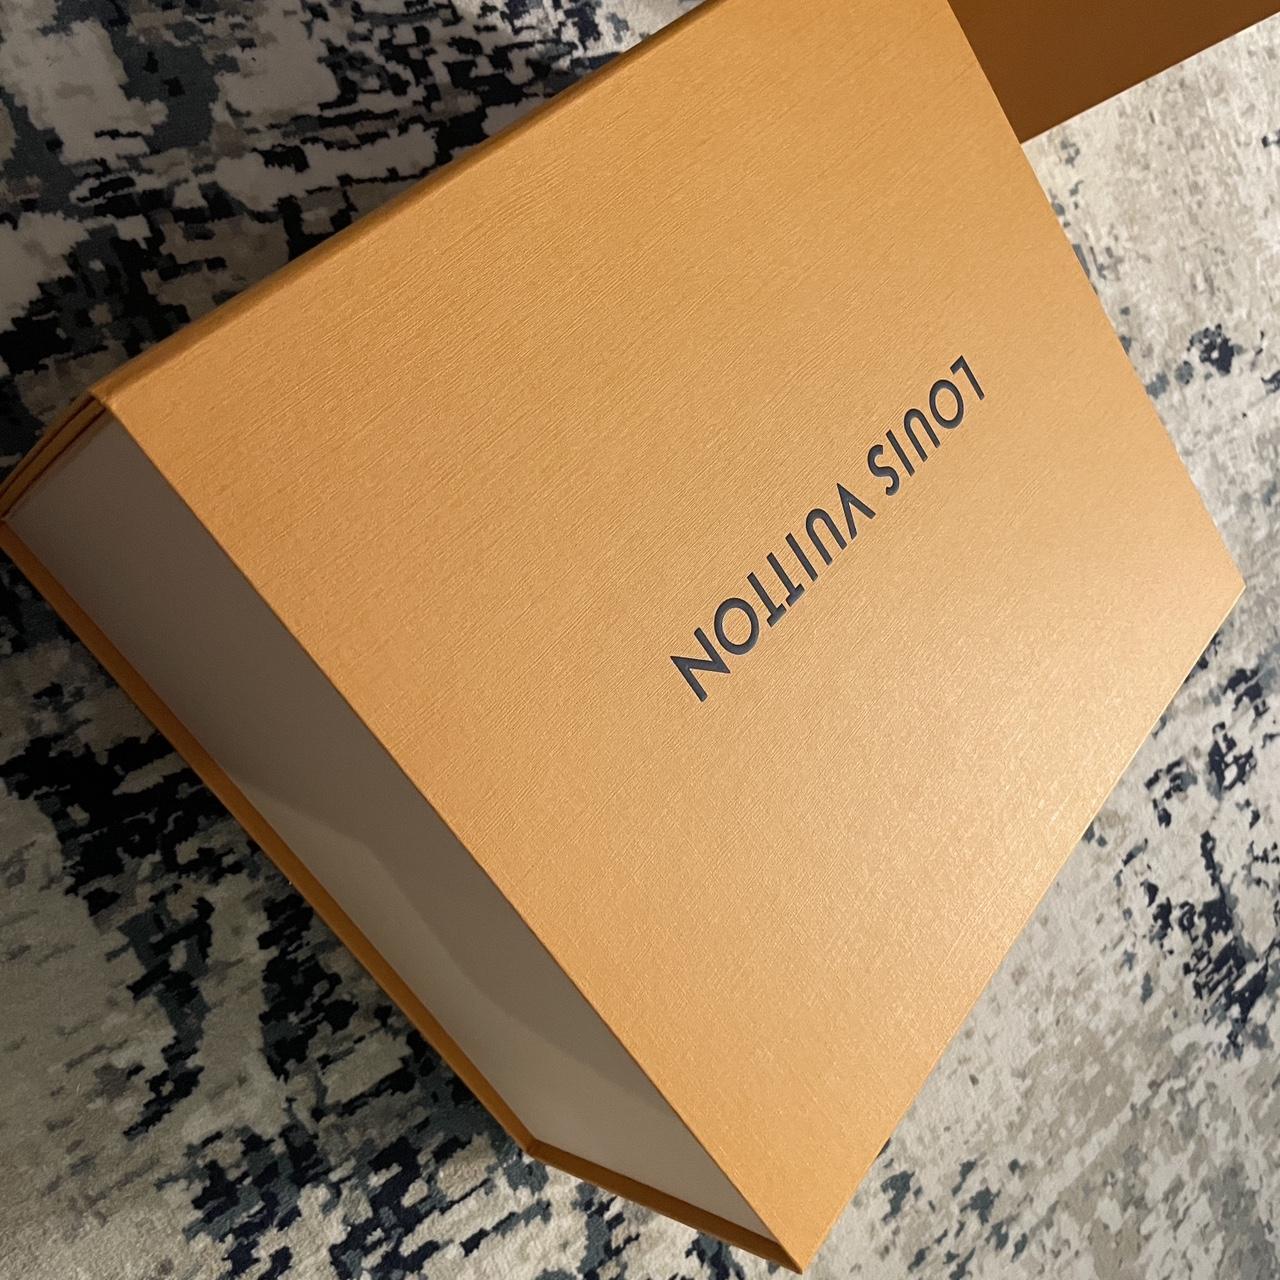 Genuine Louis Vuitton gift box + bag Excellent - Depop